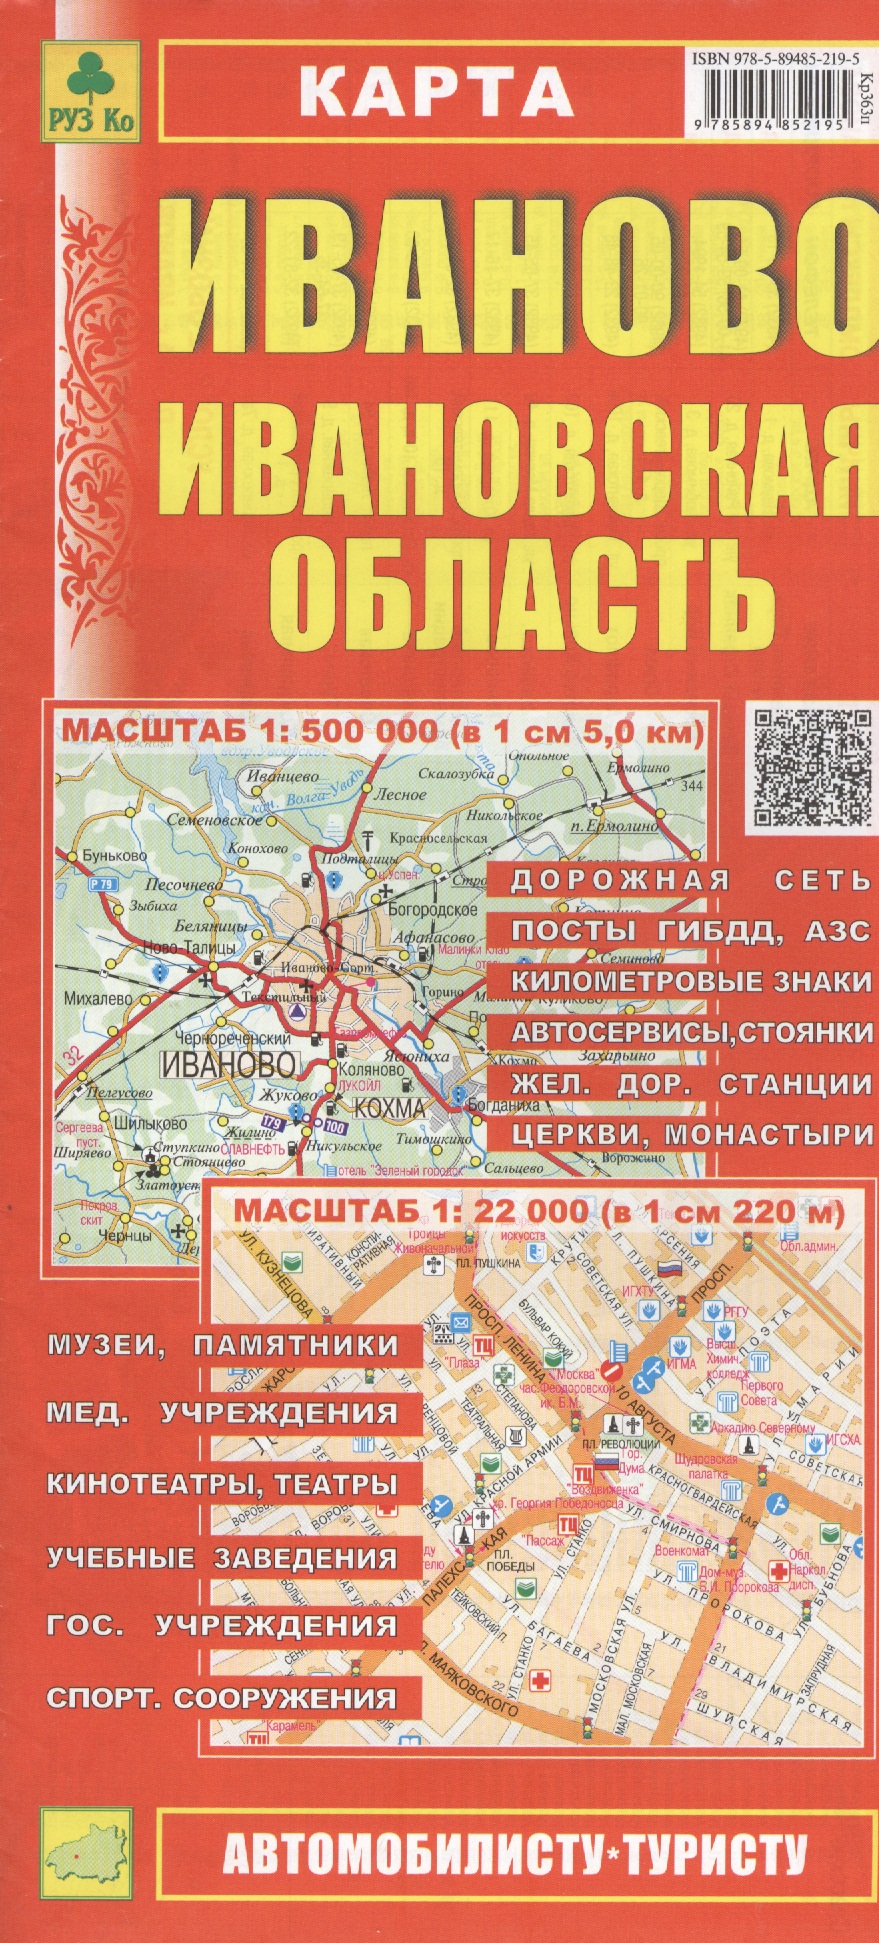 None Карта Иваново Ивановская область (1:500тыс / 1:22тыс) (Кр363п) (м) (раскл) (Руз Ко) (2014-15)